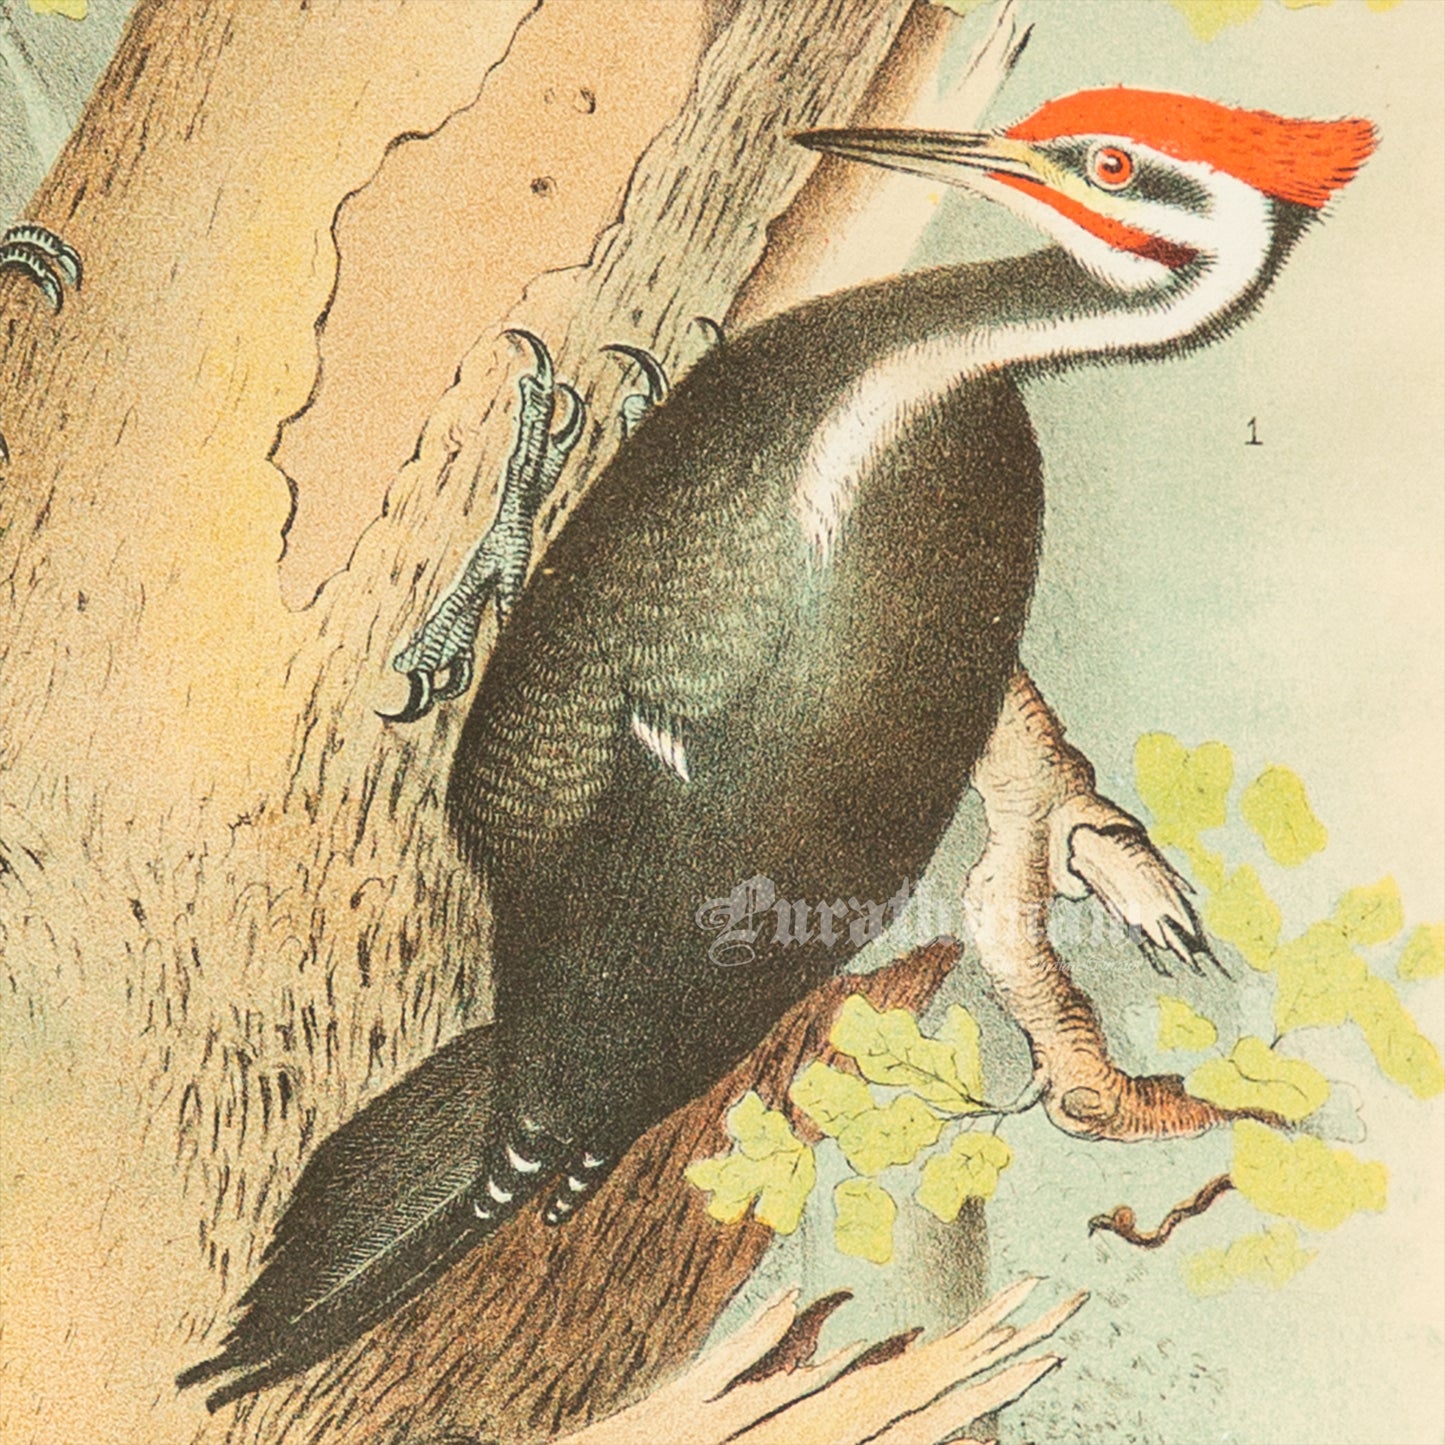 Bird - Chromo lithograph print (Plate -XVIII) by Theodore Jasper -  Bird Art / Avian Art